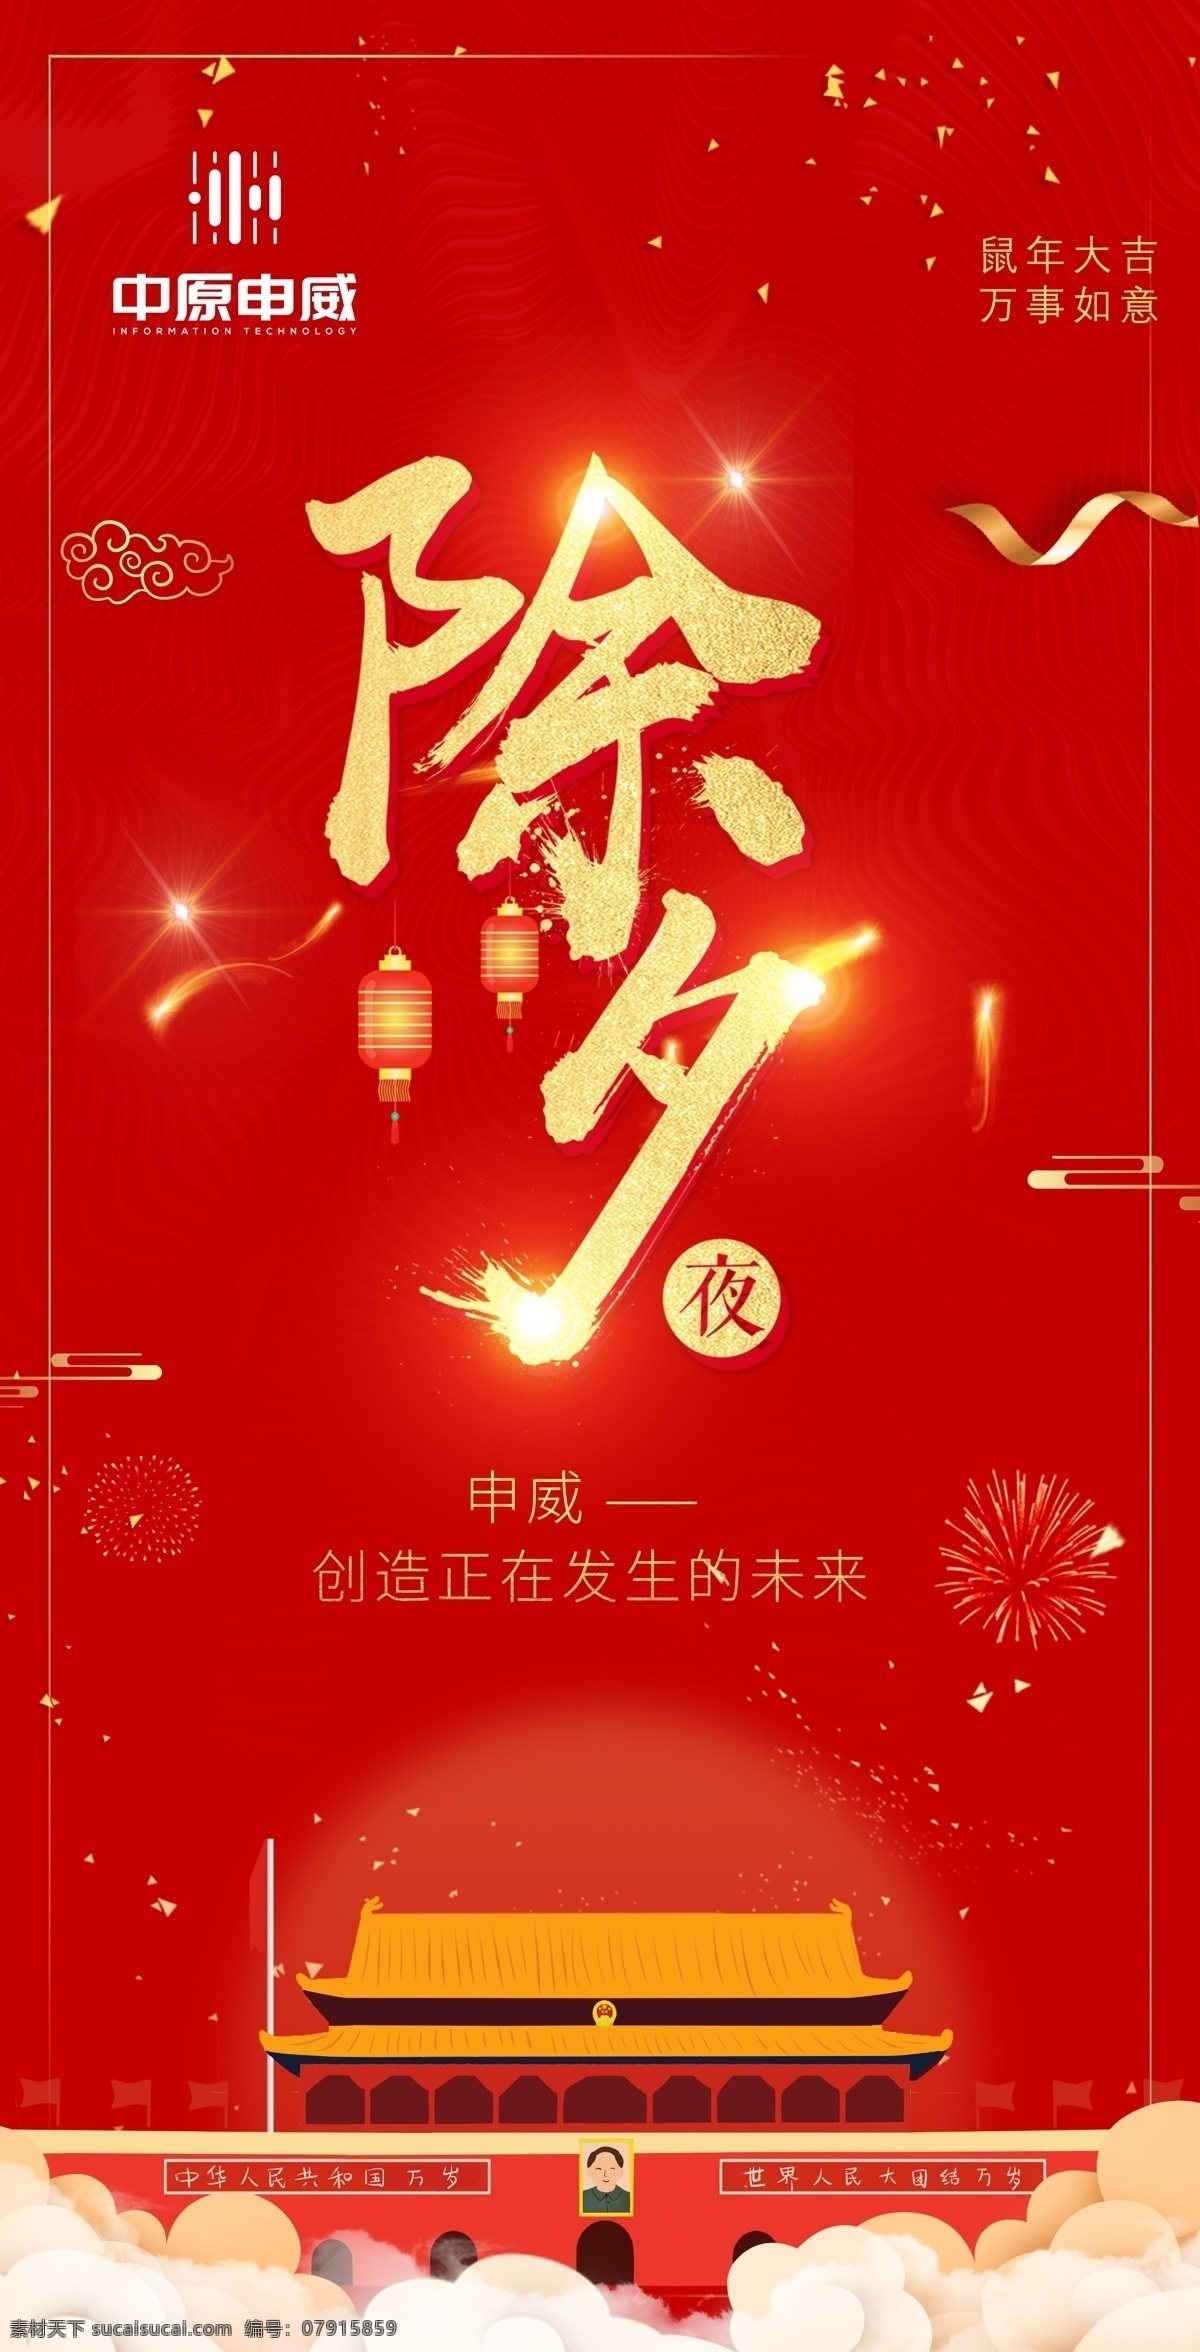 除夕 新年 过年 海报 朋友 圈 红色中国 除夕新年 过年海报 朋友圈 庆贺 喜庆 欢庆 国欢 国庆